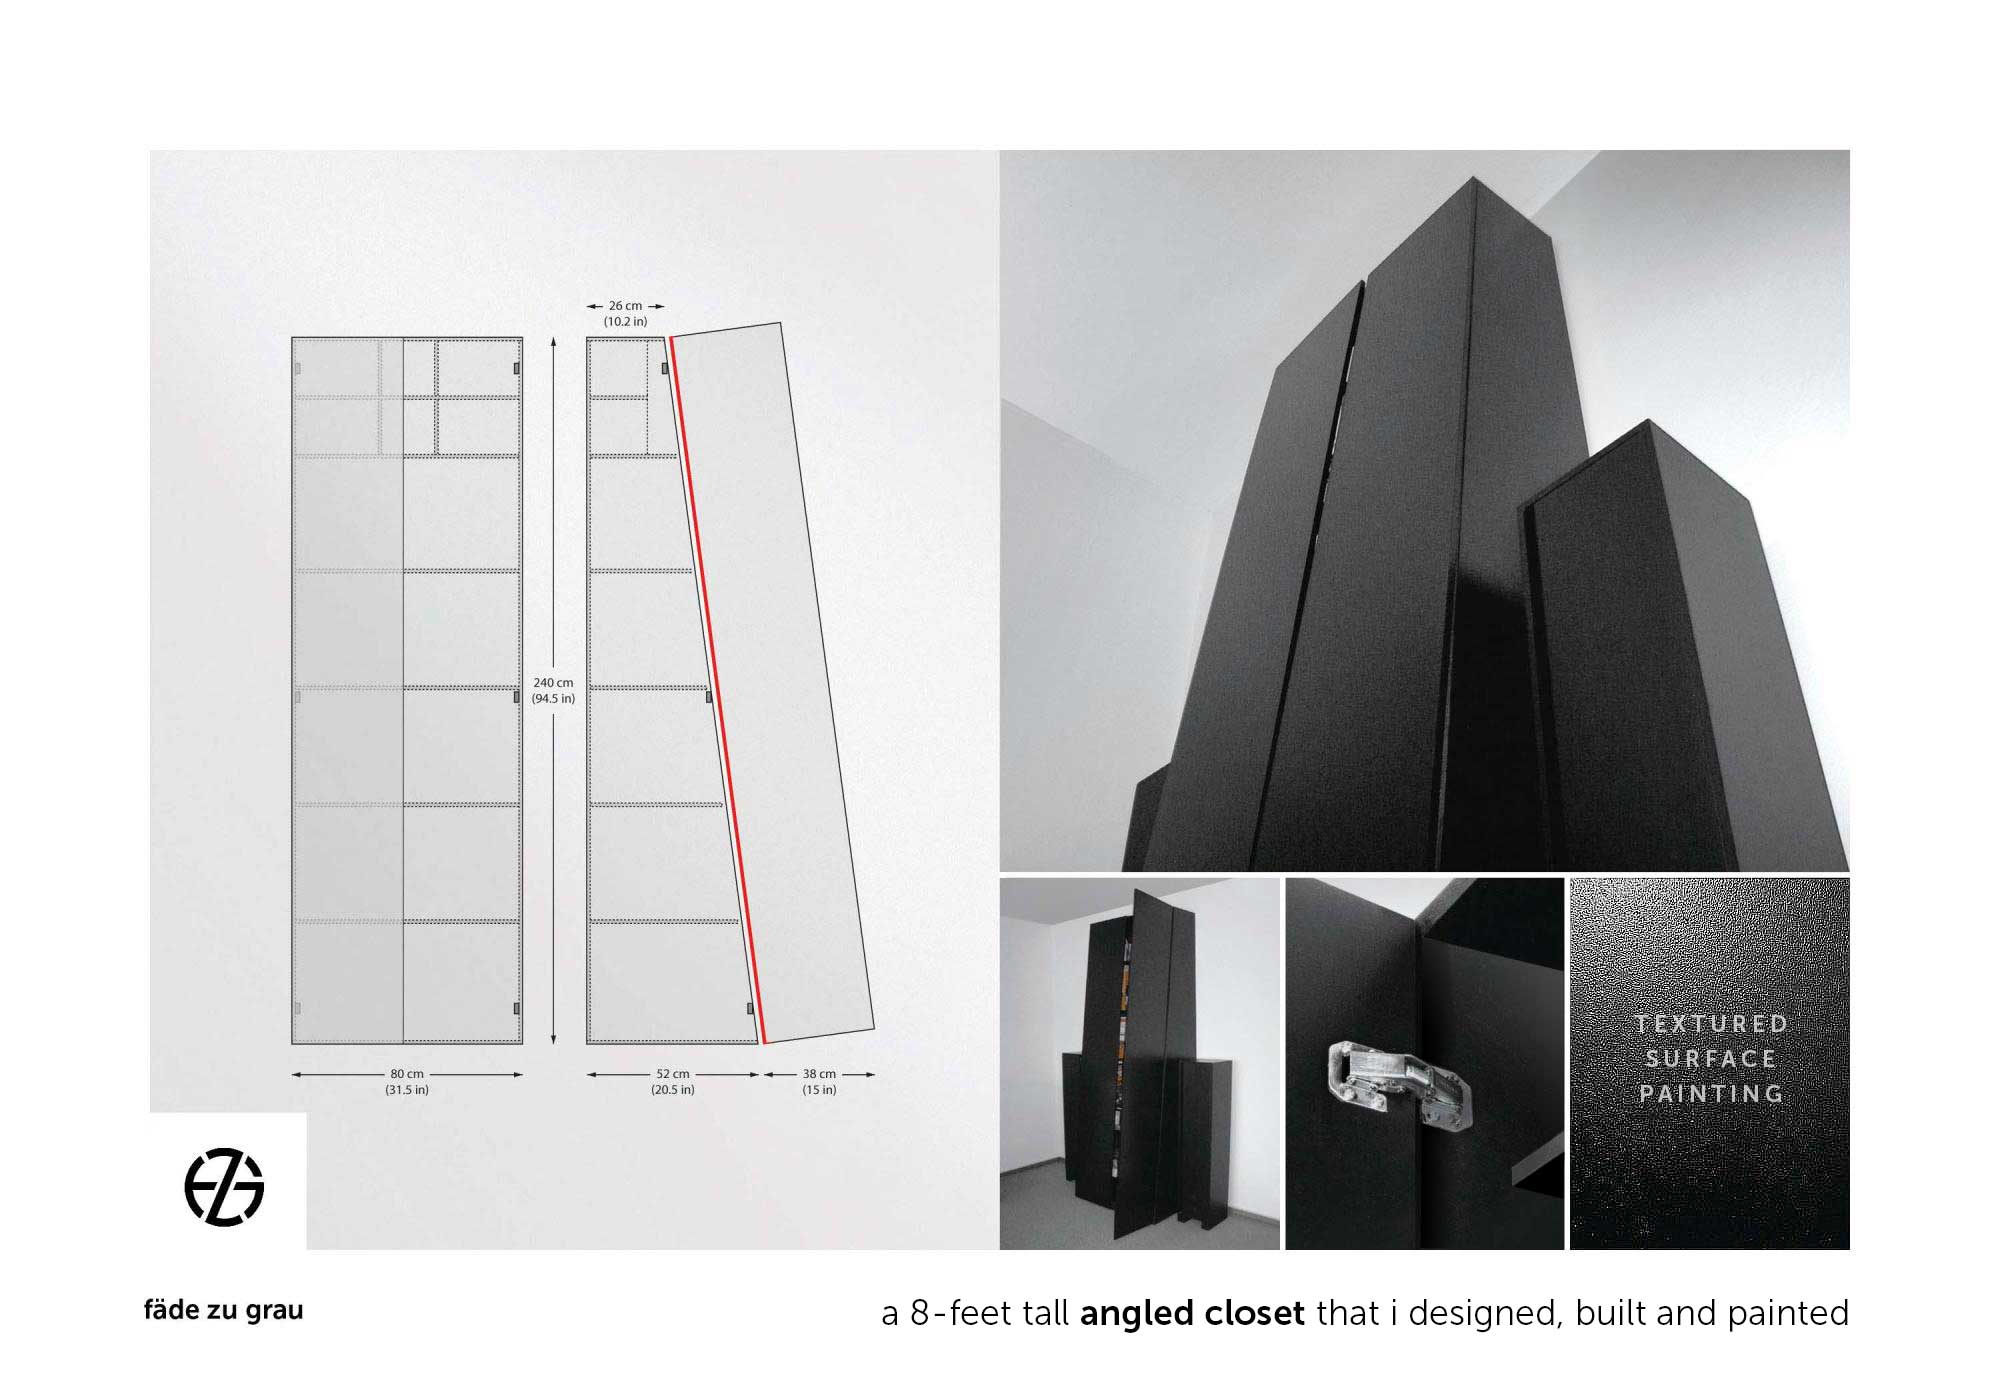 black closet designed and built by artist fade zu grau